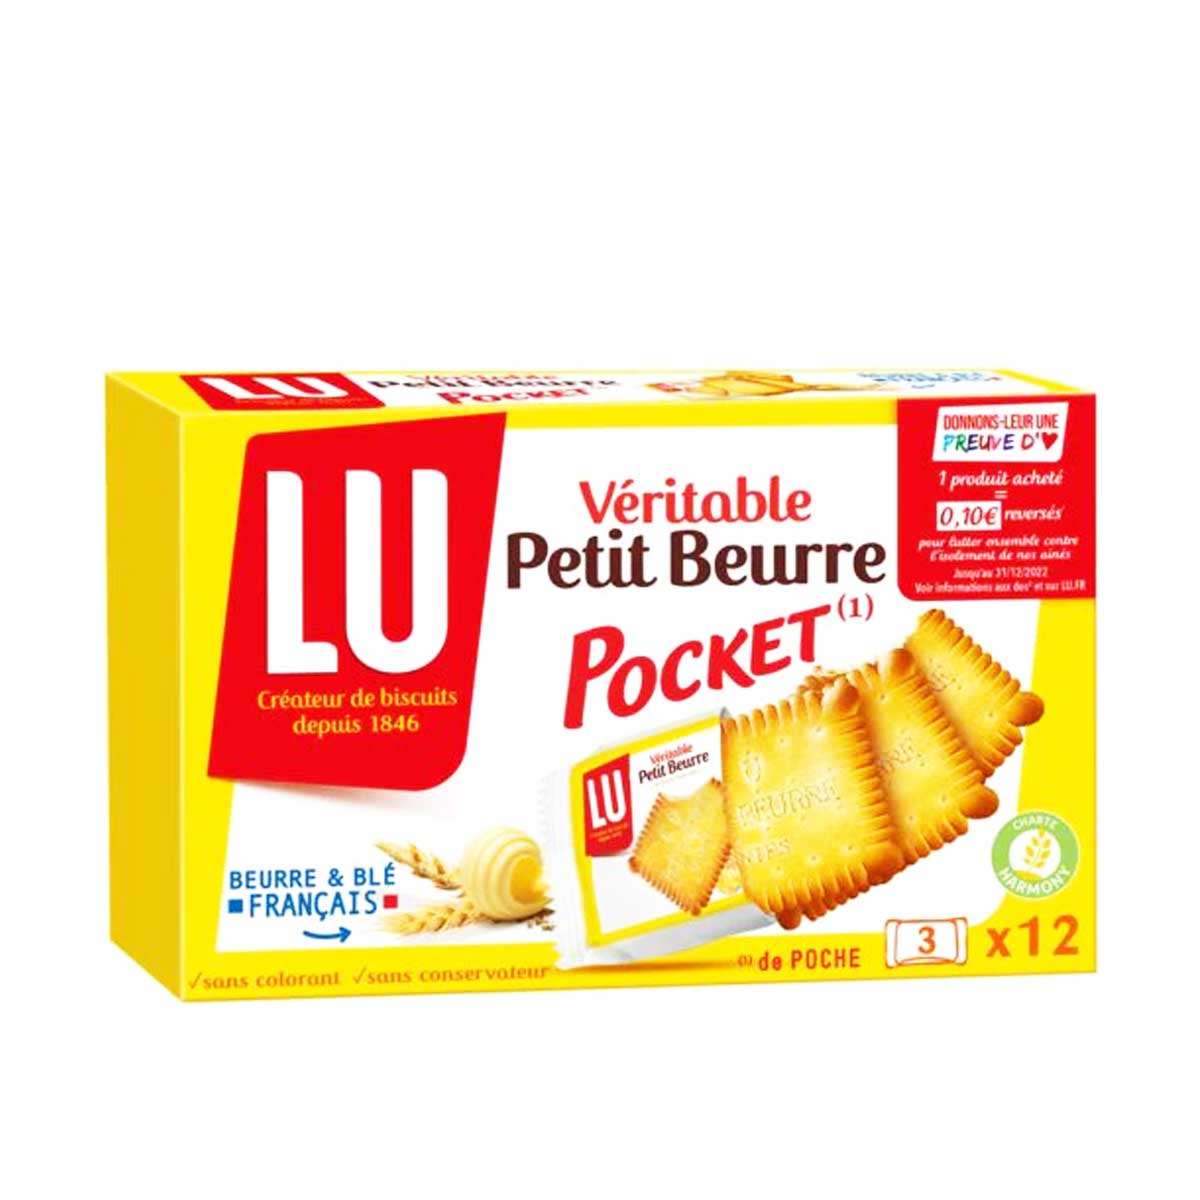 LU Biscuits véritable petit beurre pocket, sachets fraîcheur 12x3 biscuits  300g pas cher 